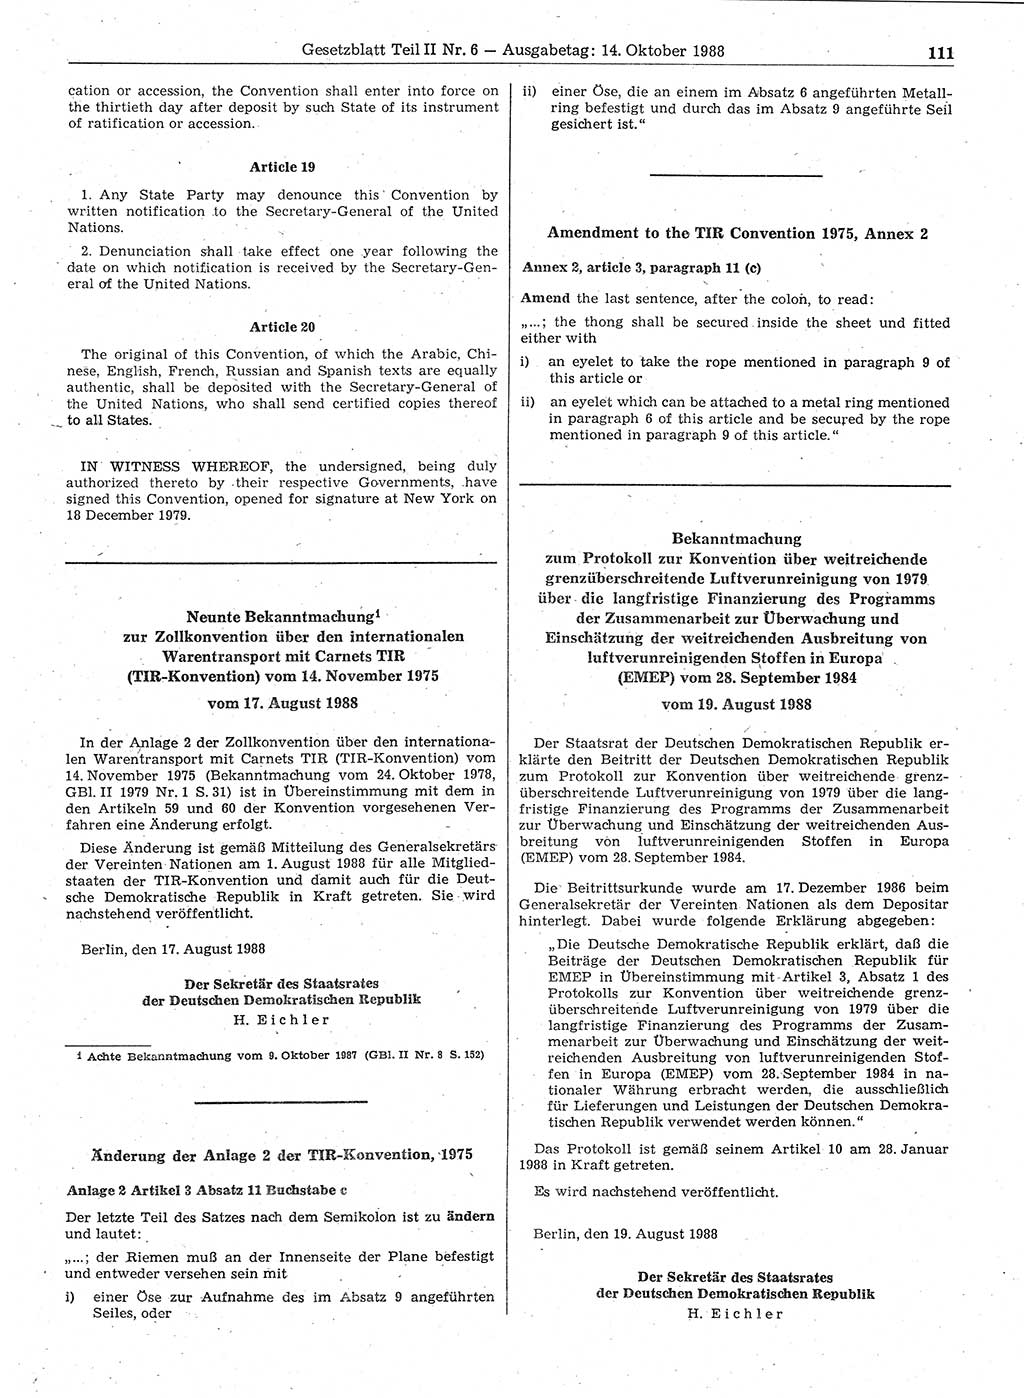 Gesetzblatt (GBl.) der Deutschen Demokratischen Republik (DDR) Teil ⅠⅠ 1988, Seite 111 (GBl. DDR ⅠⅠ 1988, S. 111)